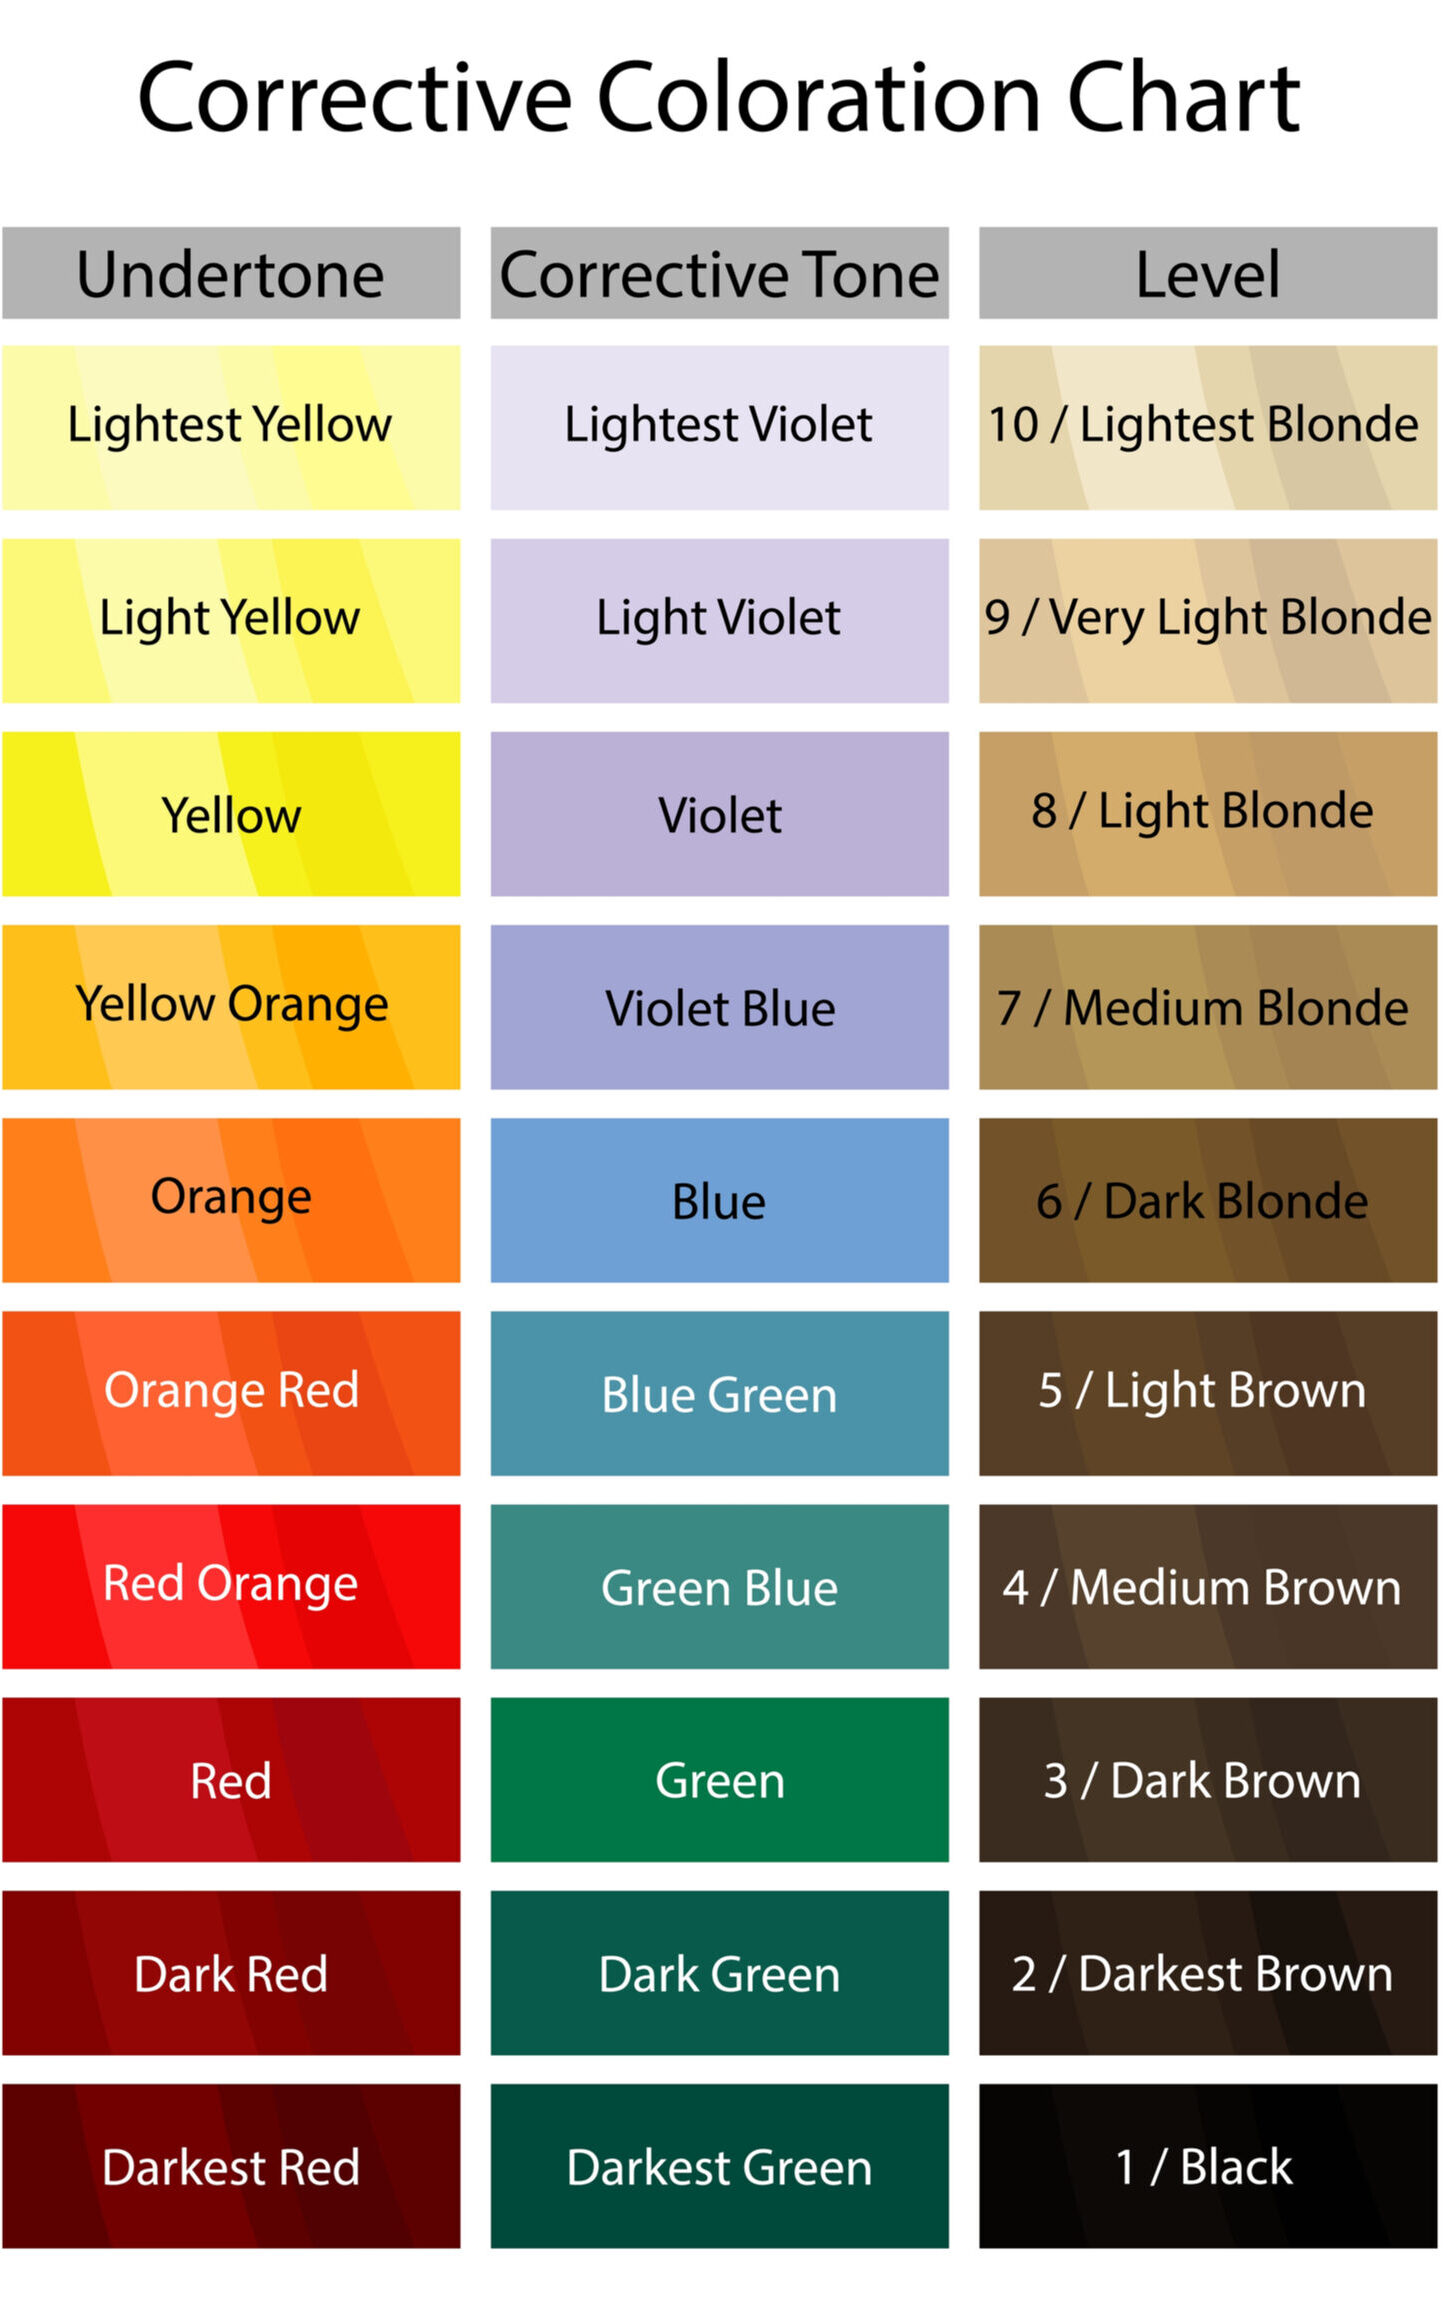 Correctieve kleurenkaart voor gebruik in de haarkleurtheorie